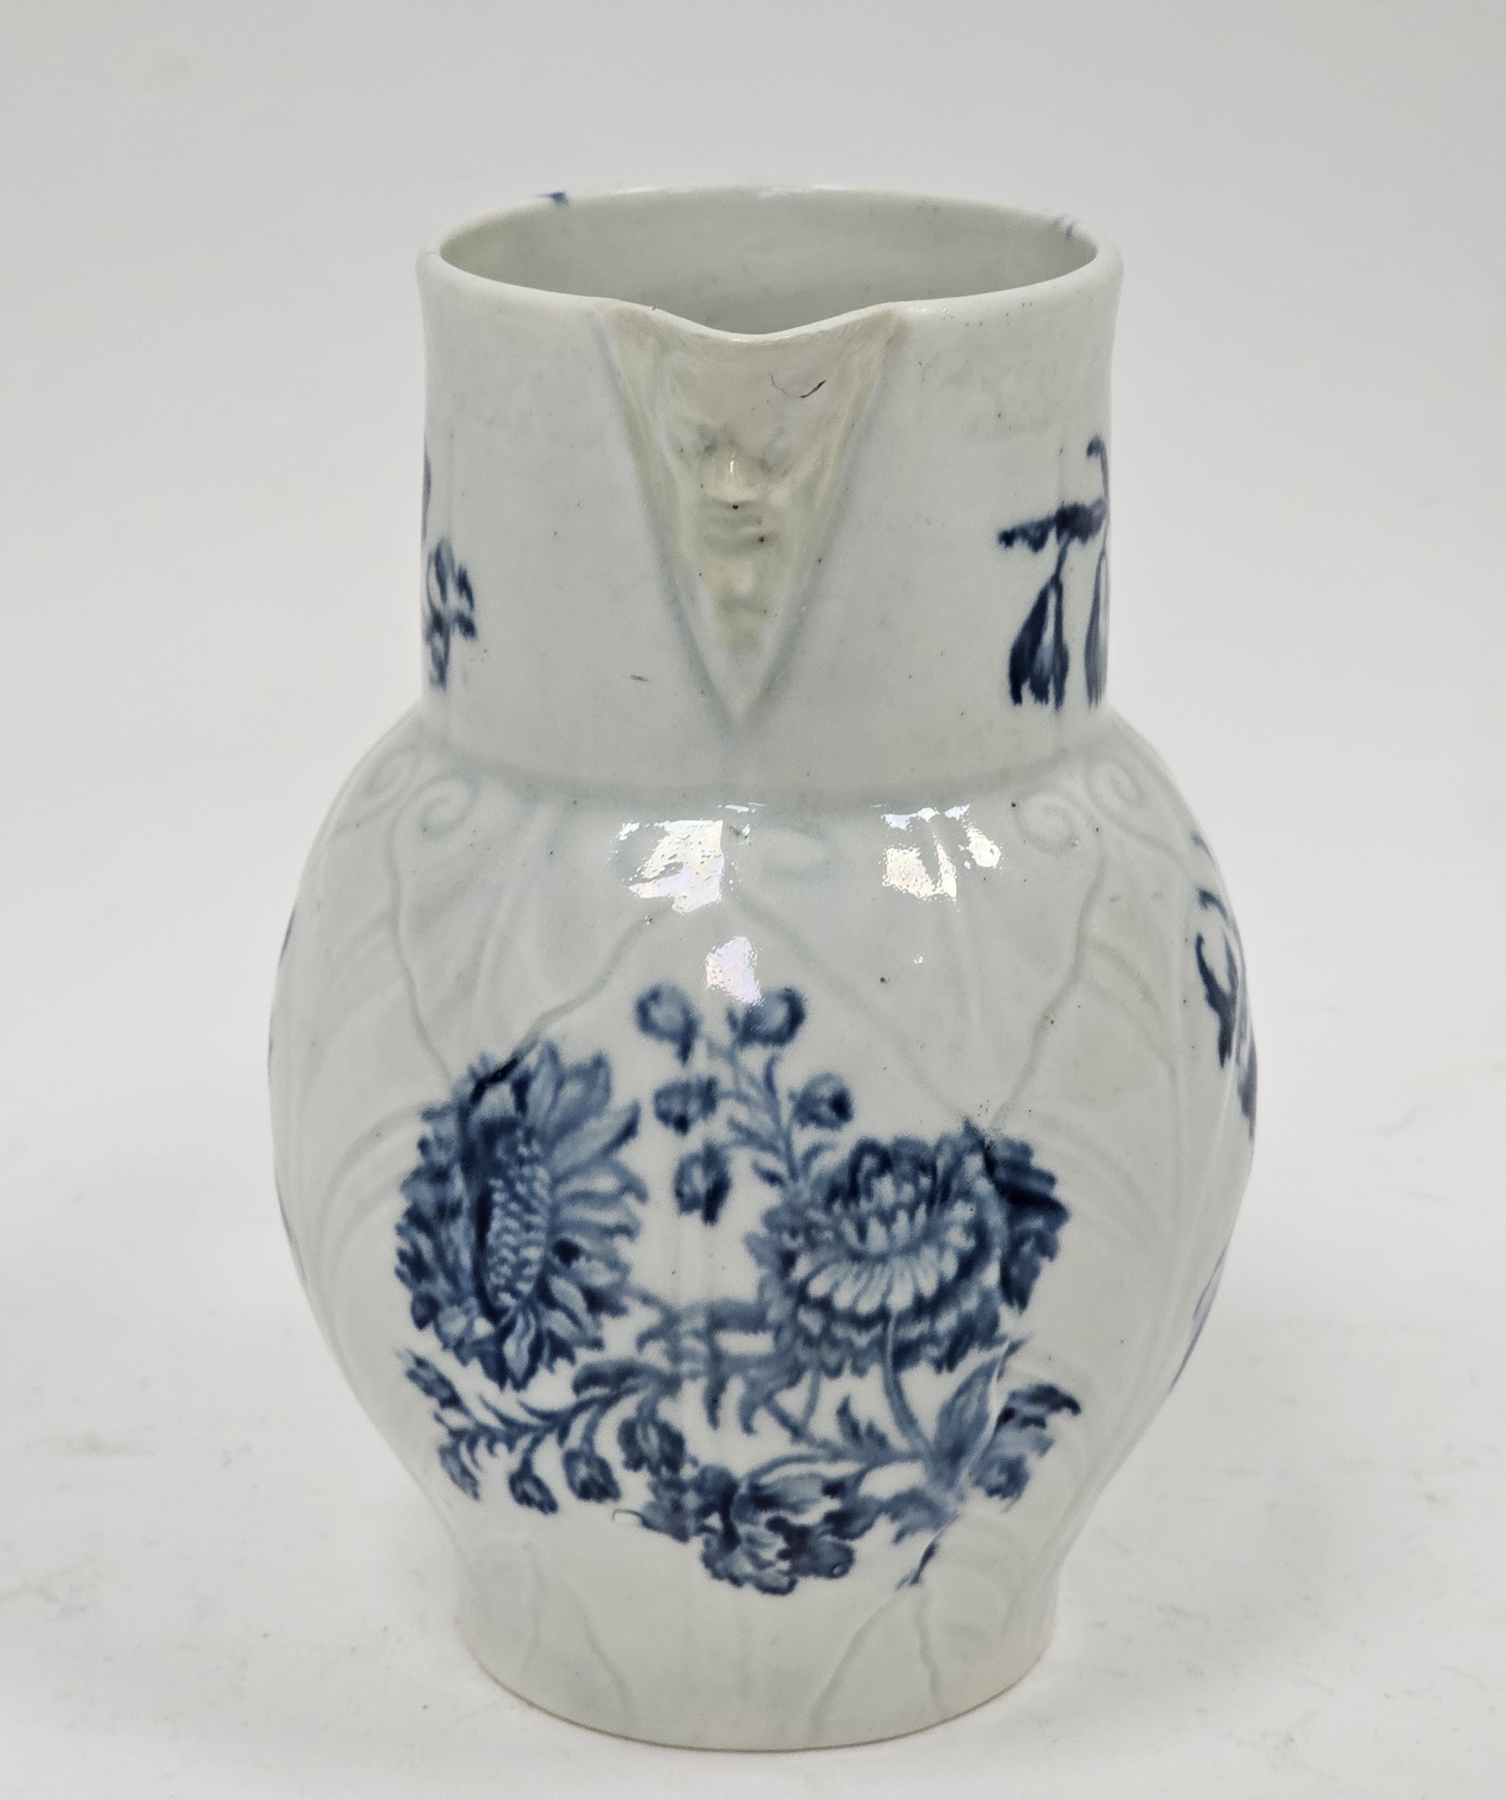 Worcester porcelain small cabbage leaf moulded mask jug, circa 1780, blue crescent mark, with mask - Image 2 of 30